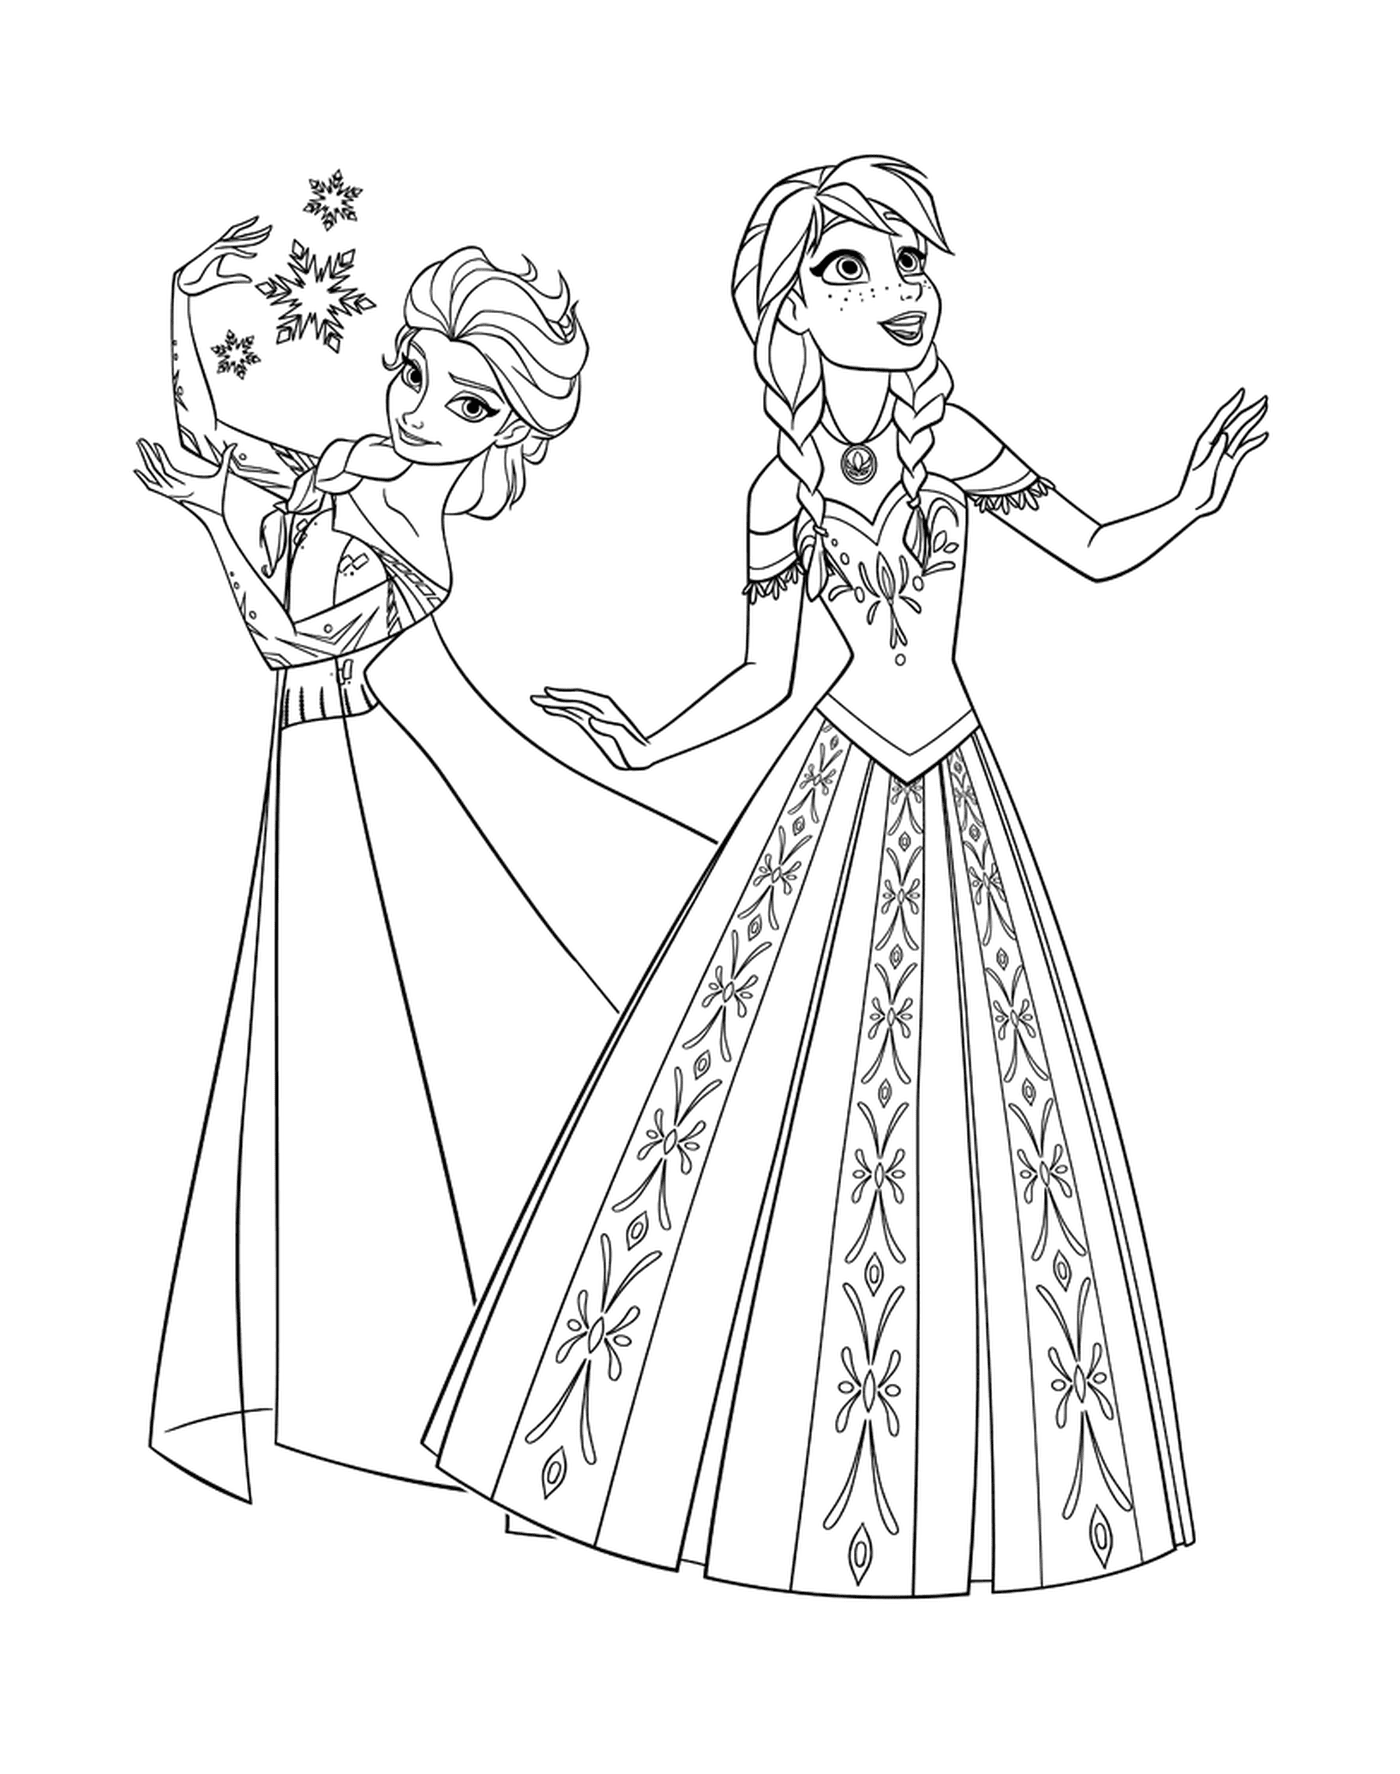  Anna y Elsa, Princesas de la Reina de las Nieves 